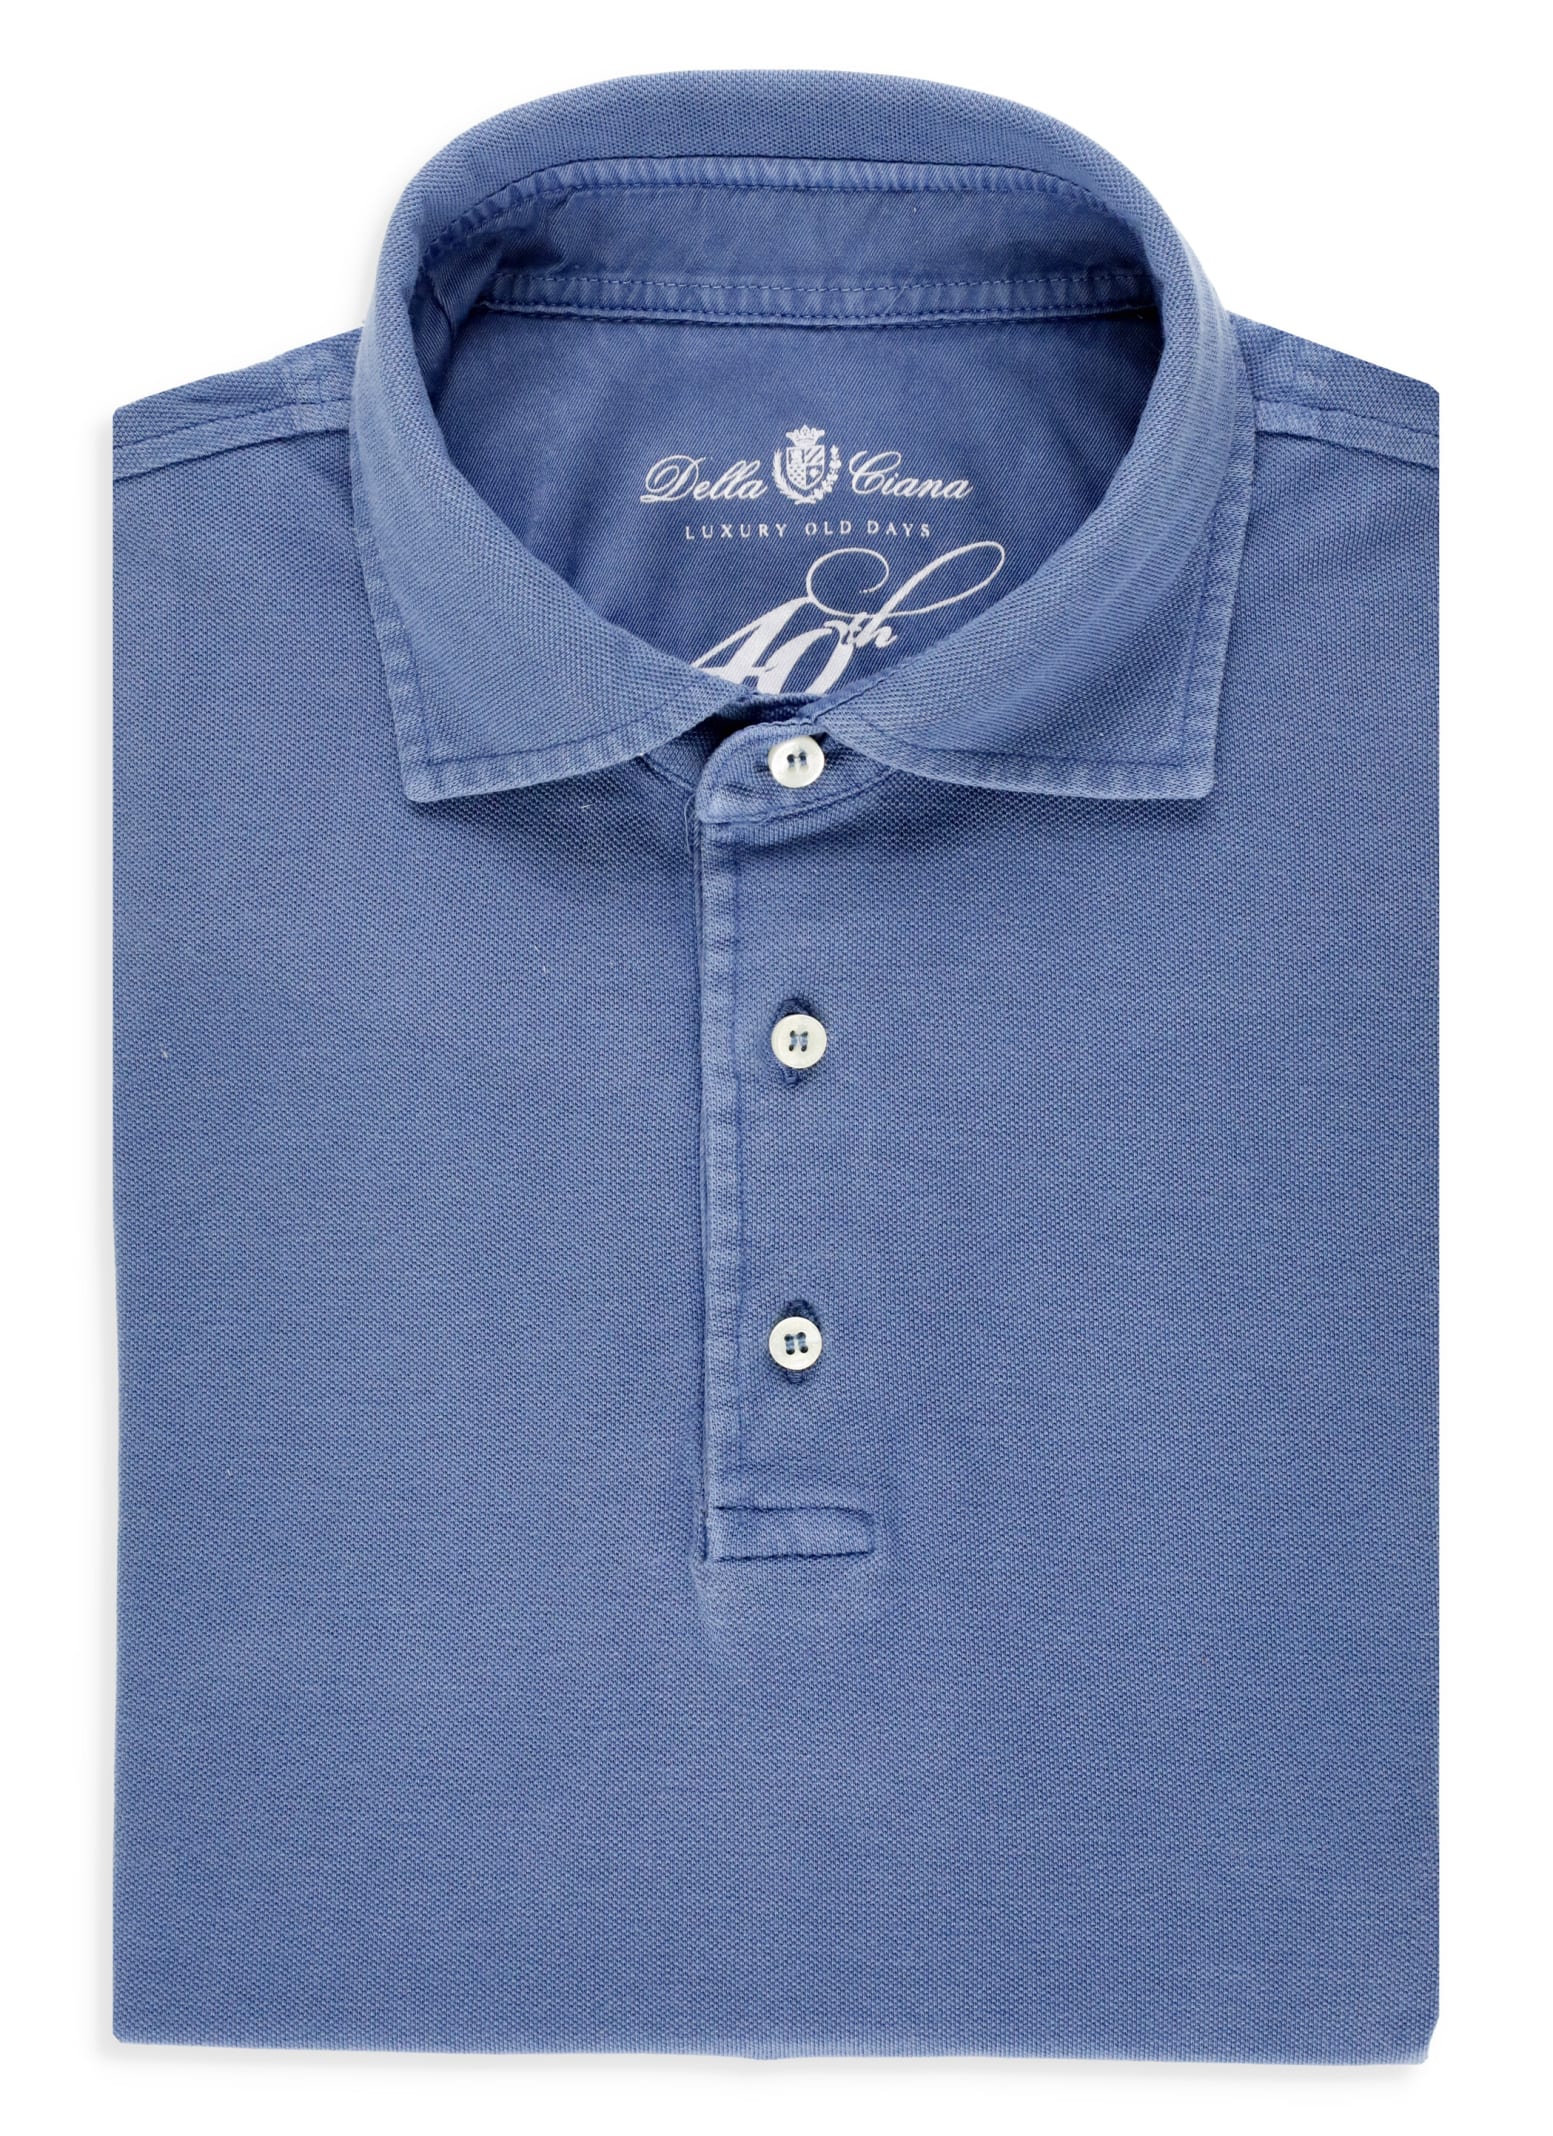 Della Ciana Piquet Cotton Polo Shirt